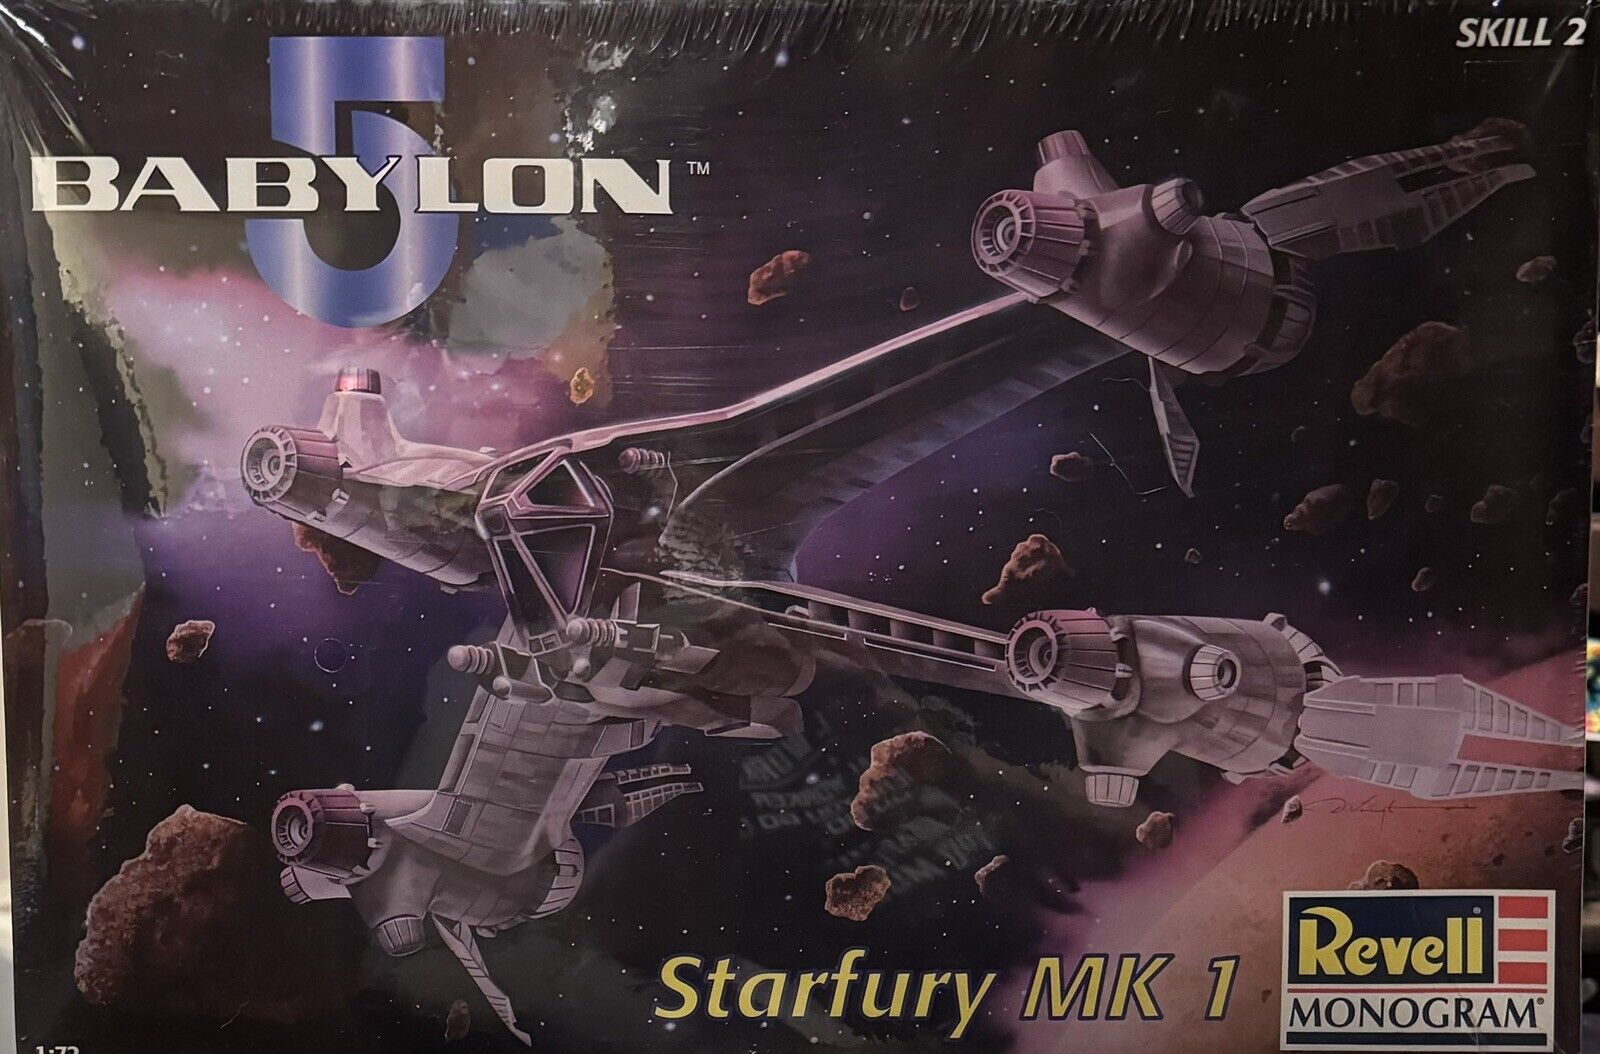 Babylon 5 Starfury MK 1, 1:72 Scale, Revell/Monogram No. 85-3621